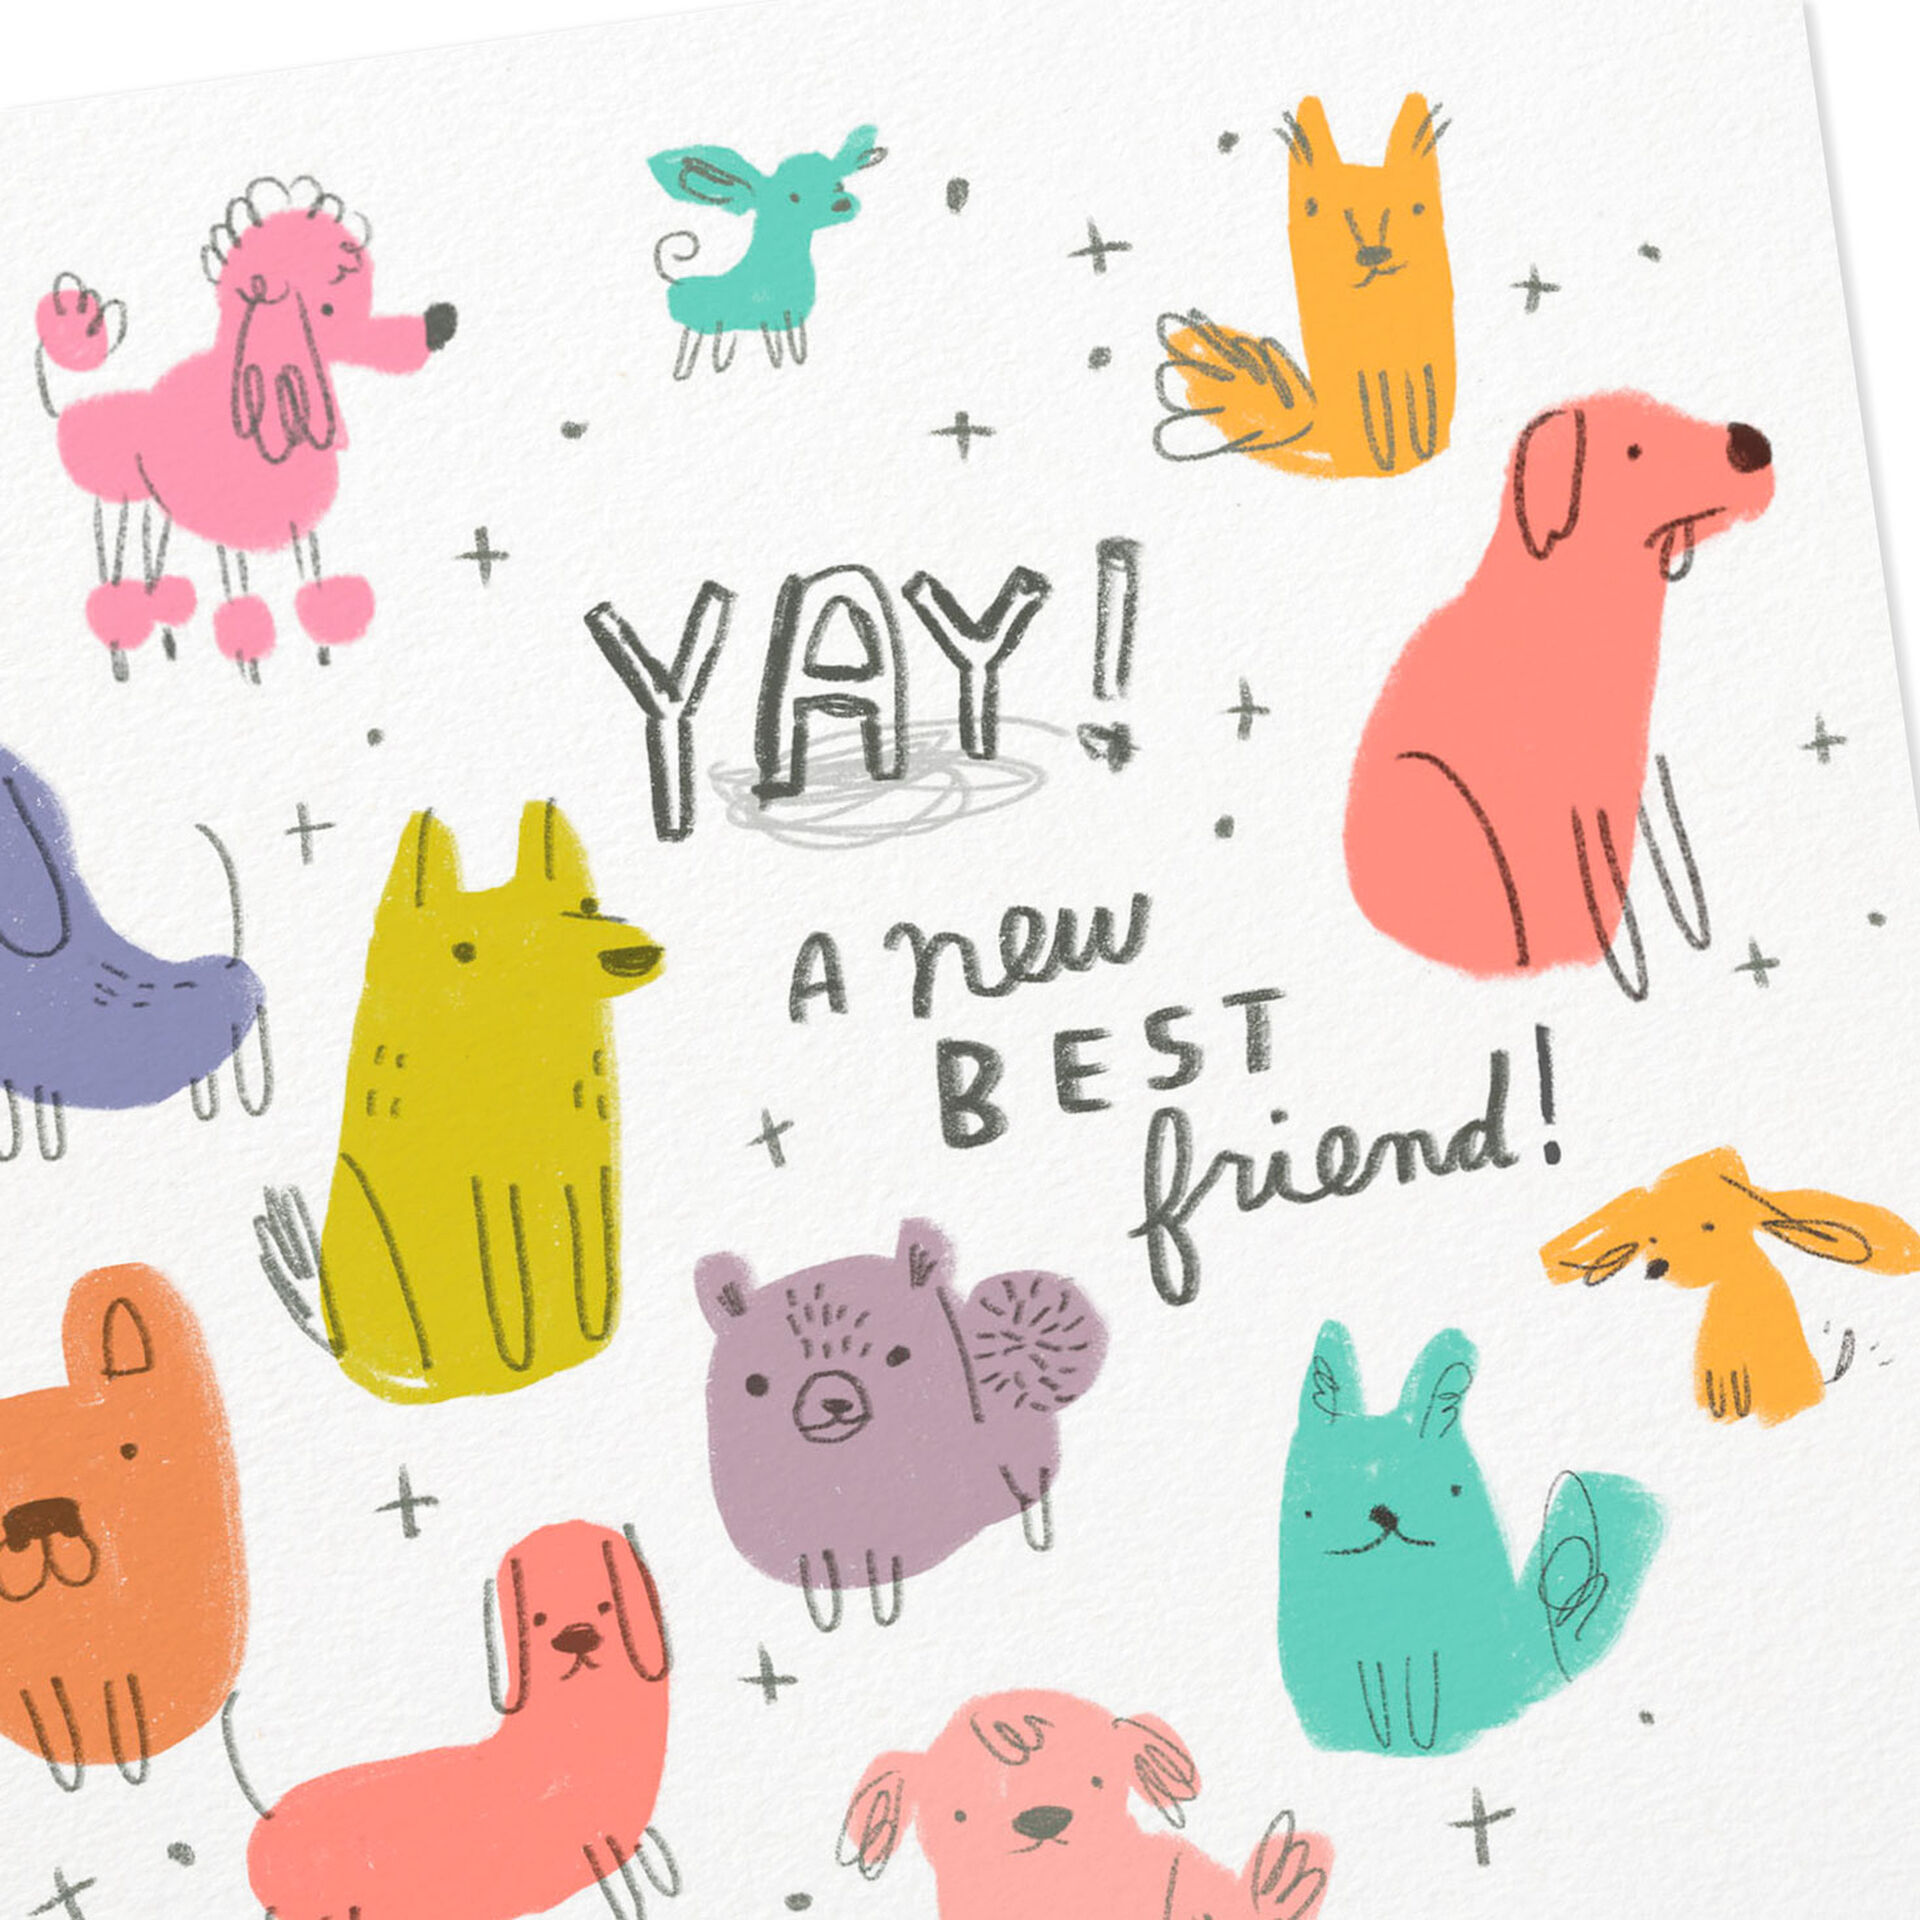 A-New-Best-Dog-Friend-Congratulations-Card_299YYS1419_04